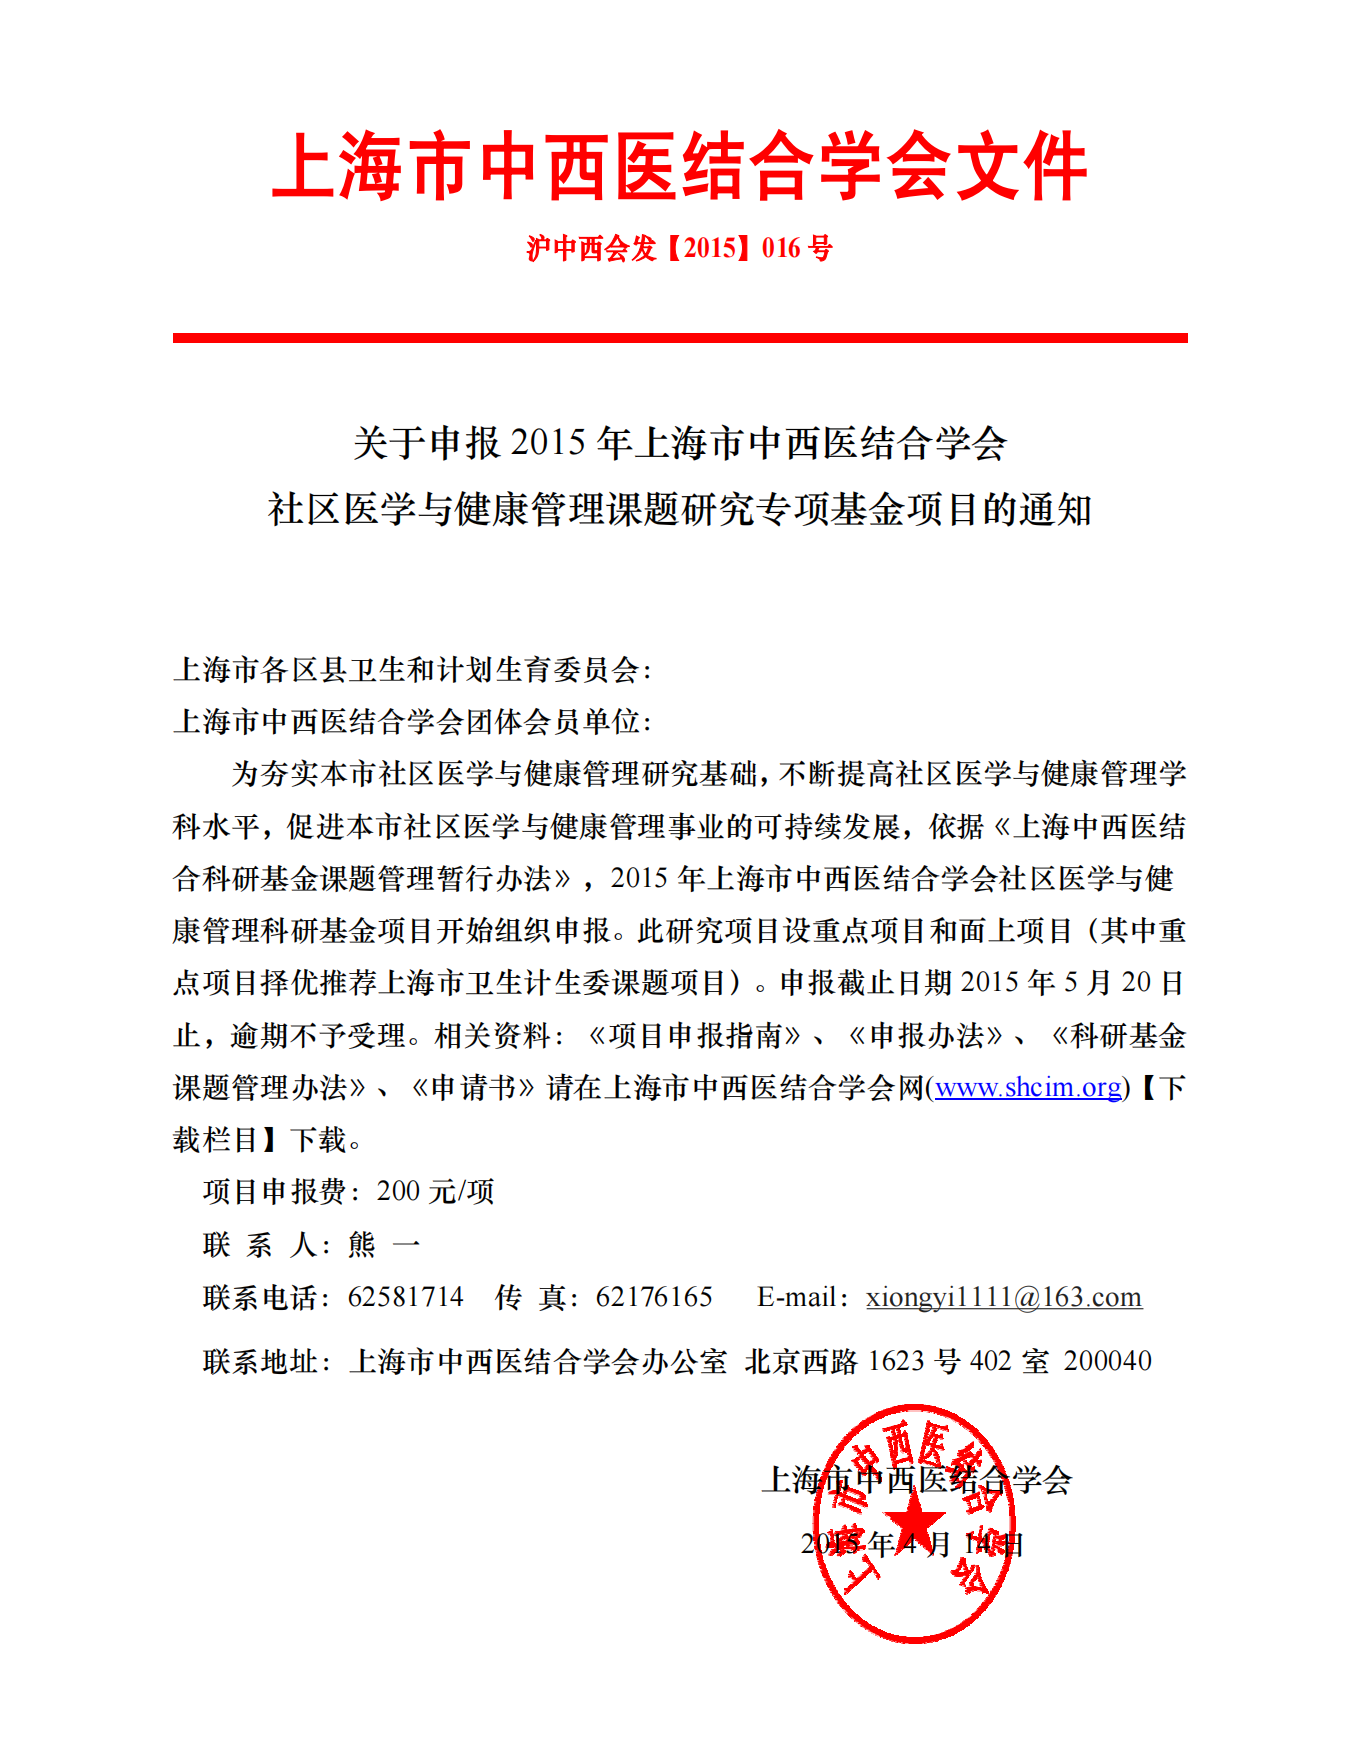 2015年上海市中西医结合学会社区医学与健康管理科研基金招标通知_00.png